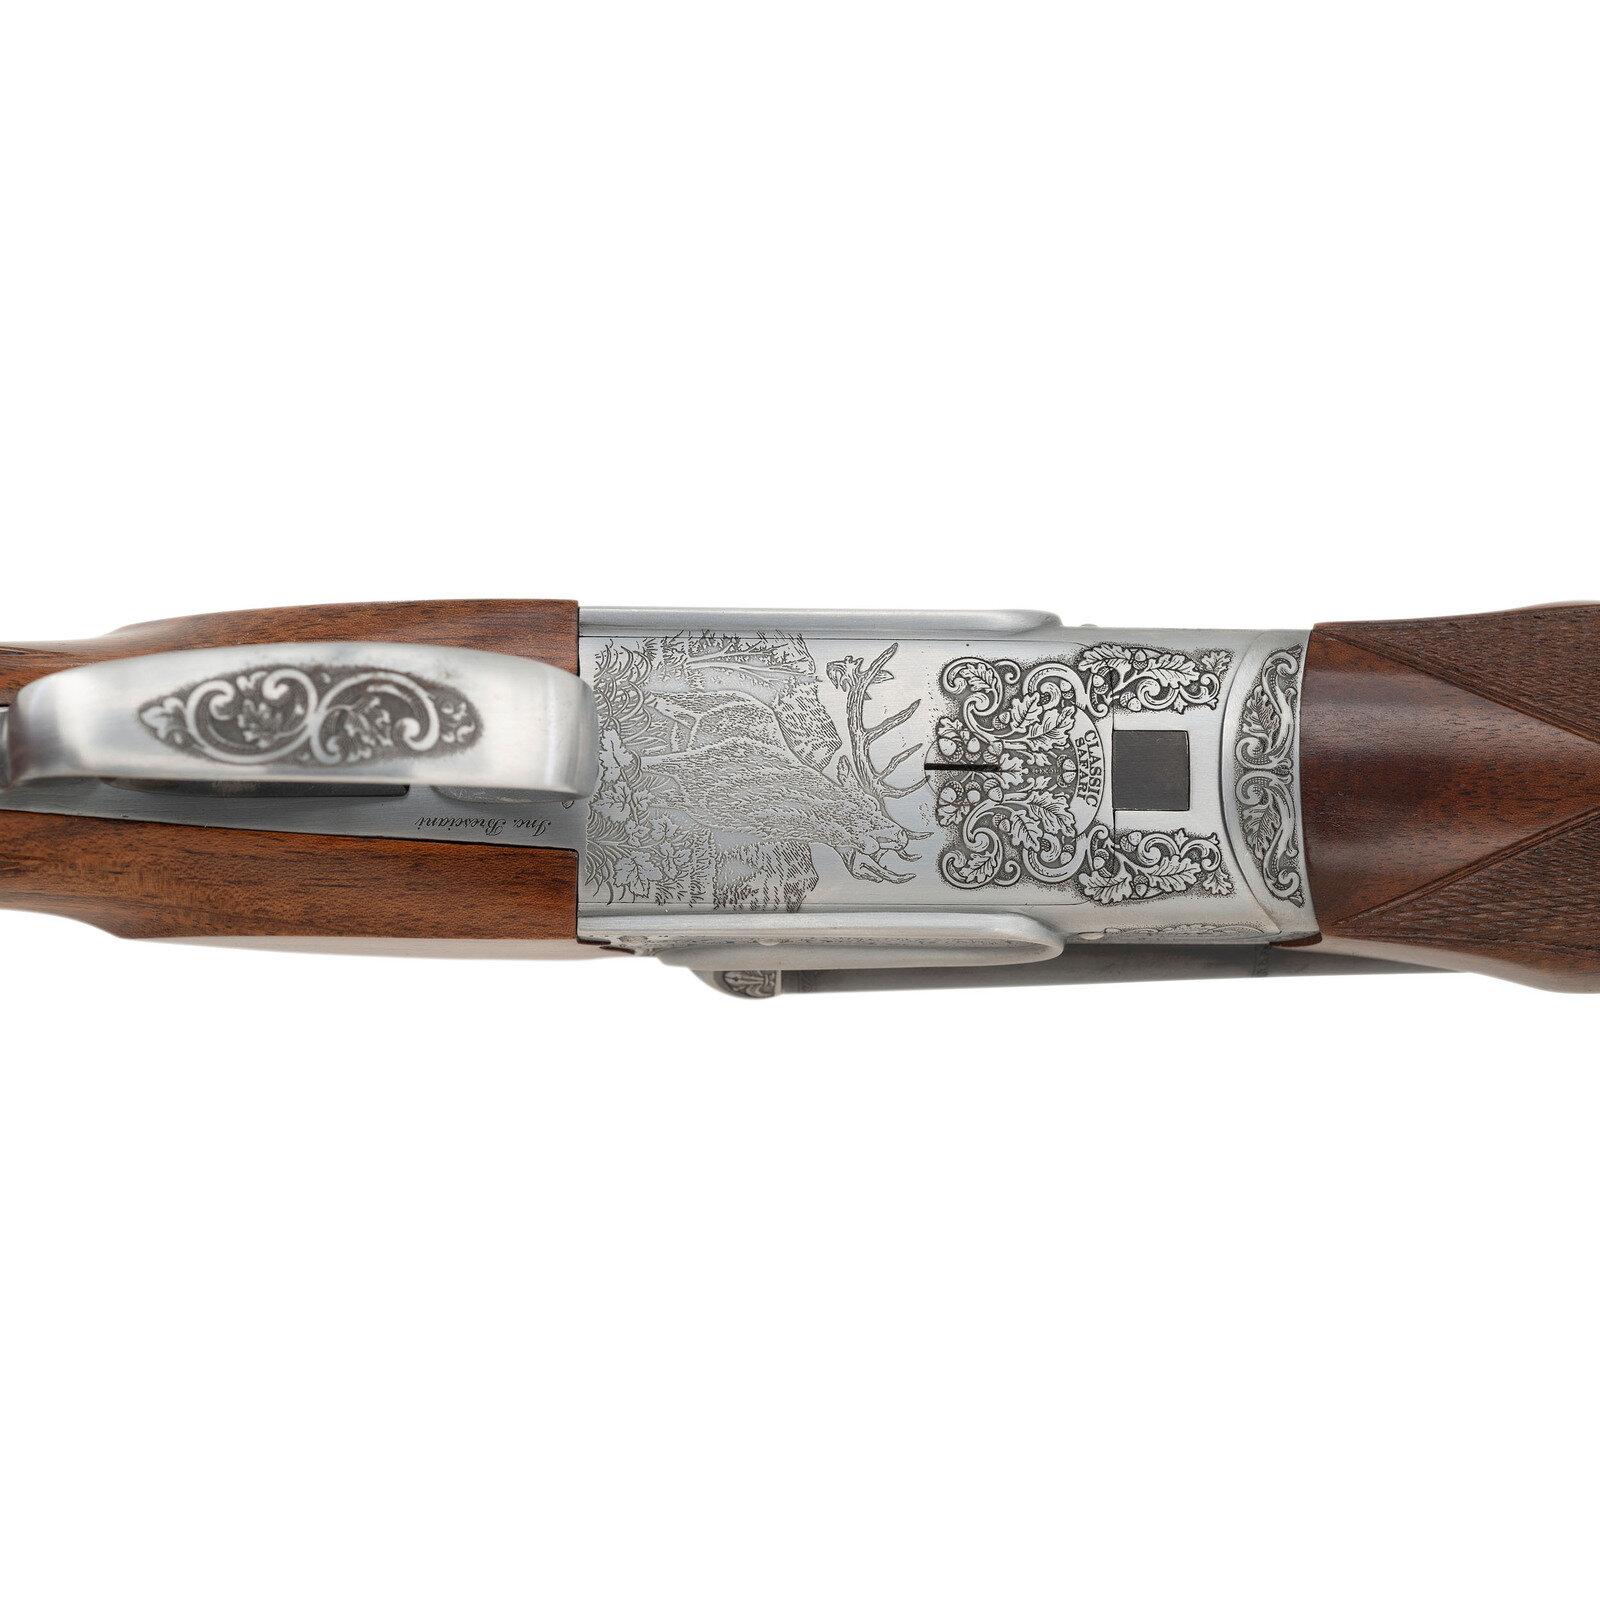 *Sabatti Classic Safari Model Rifle in .45-70 with Case and Accessories